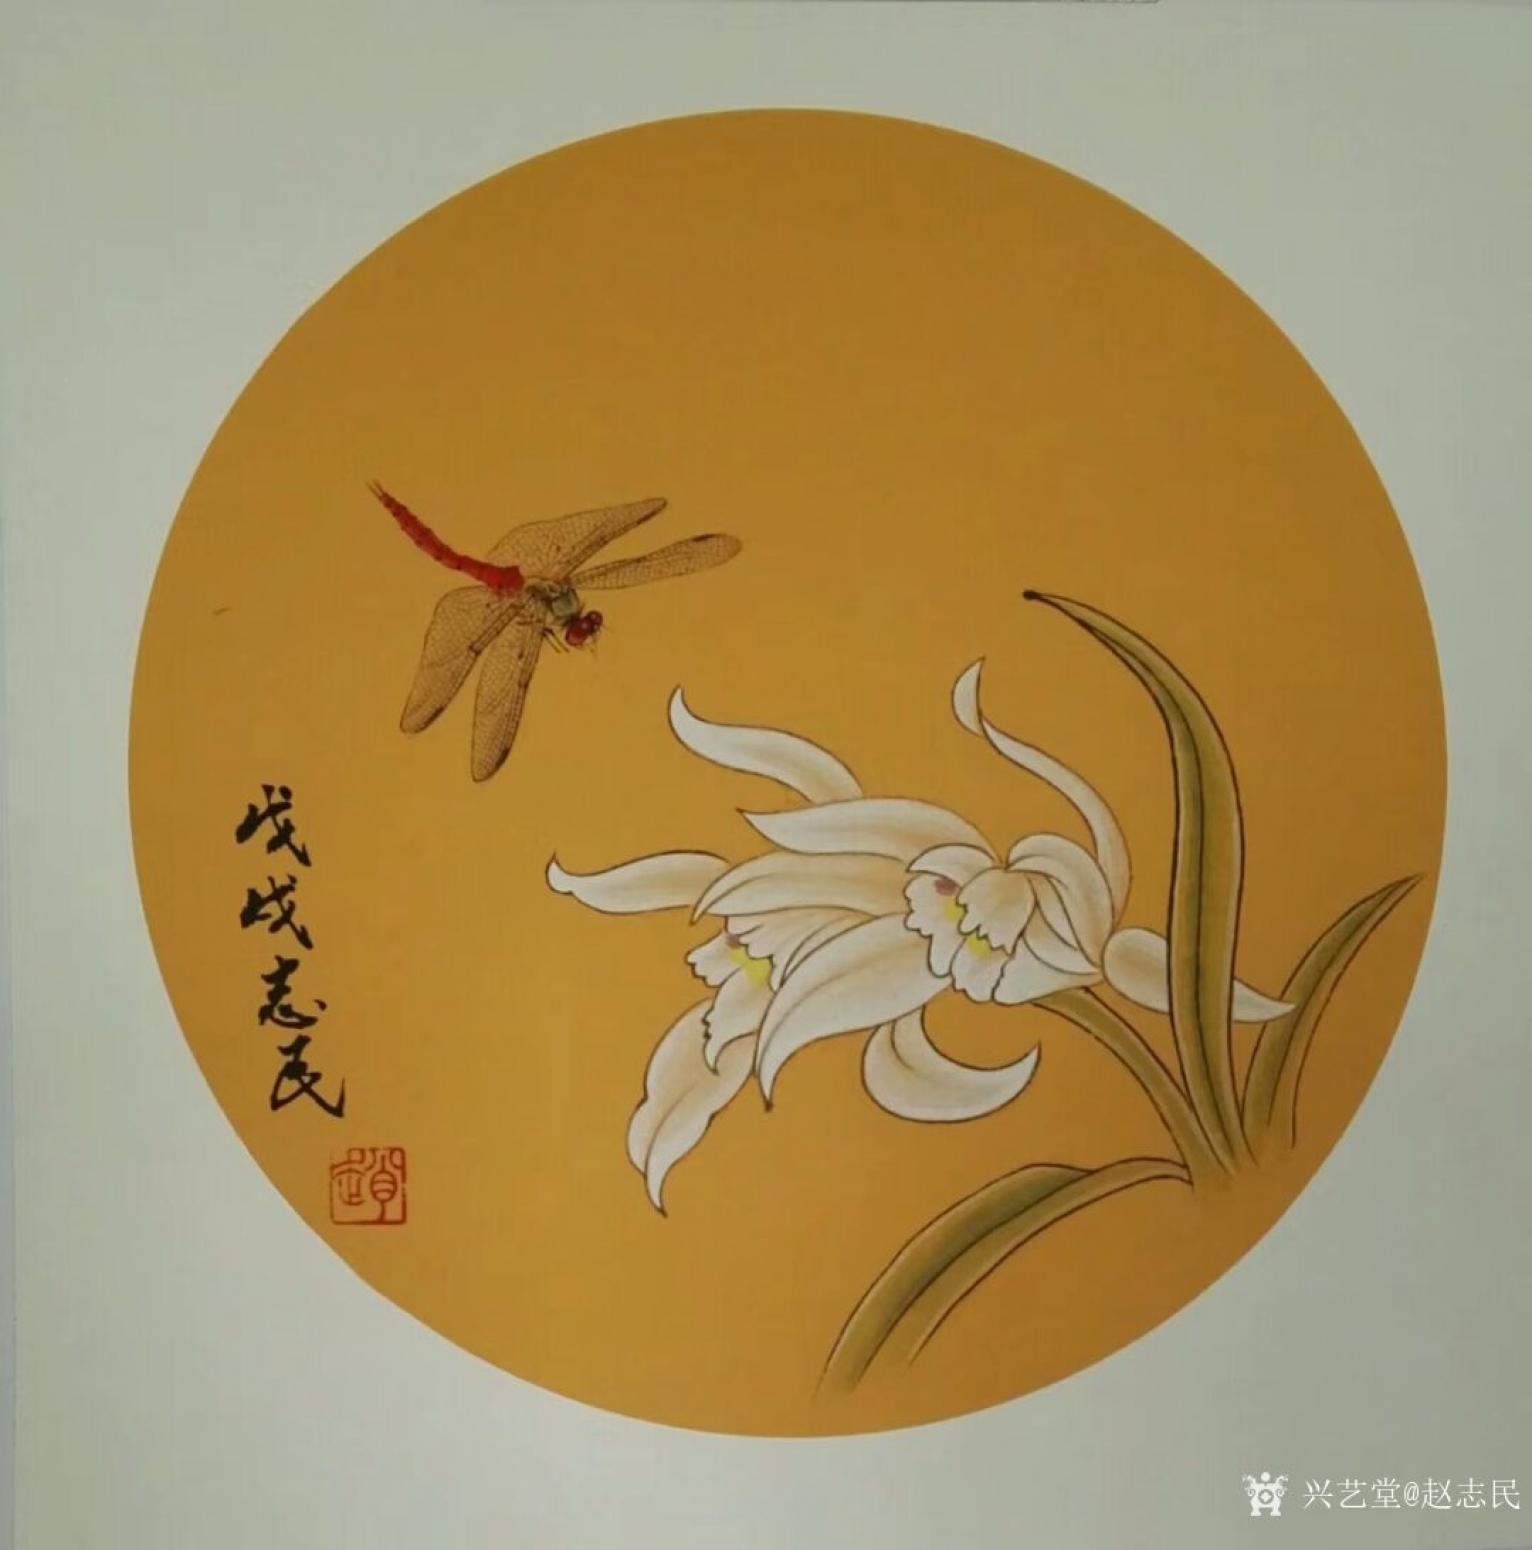 赵志民国画作品《蜻蜓》